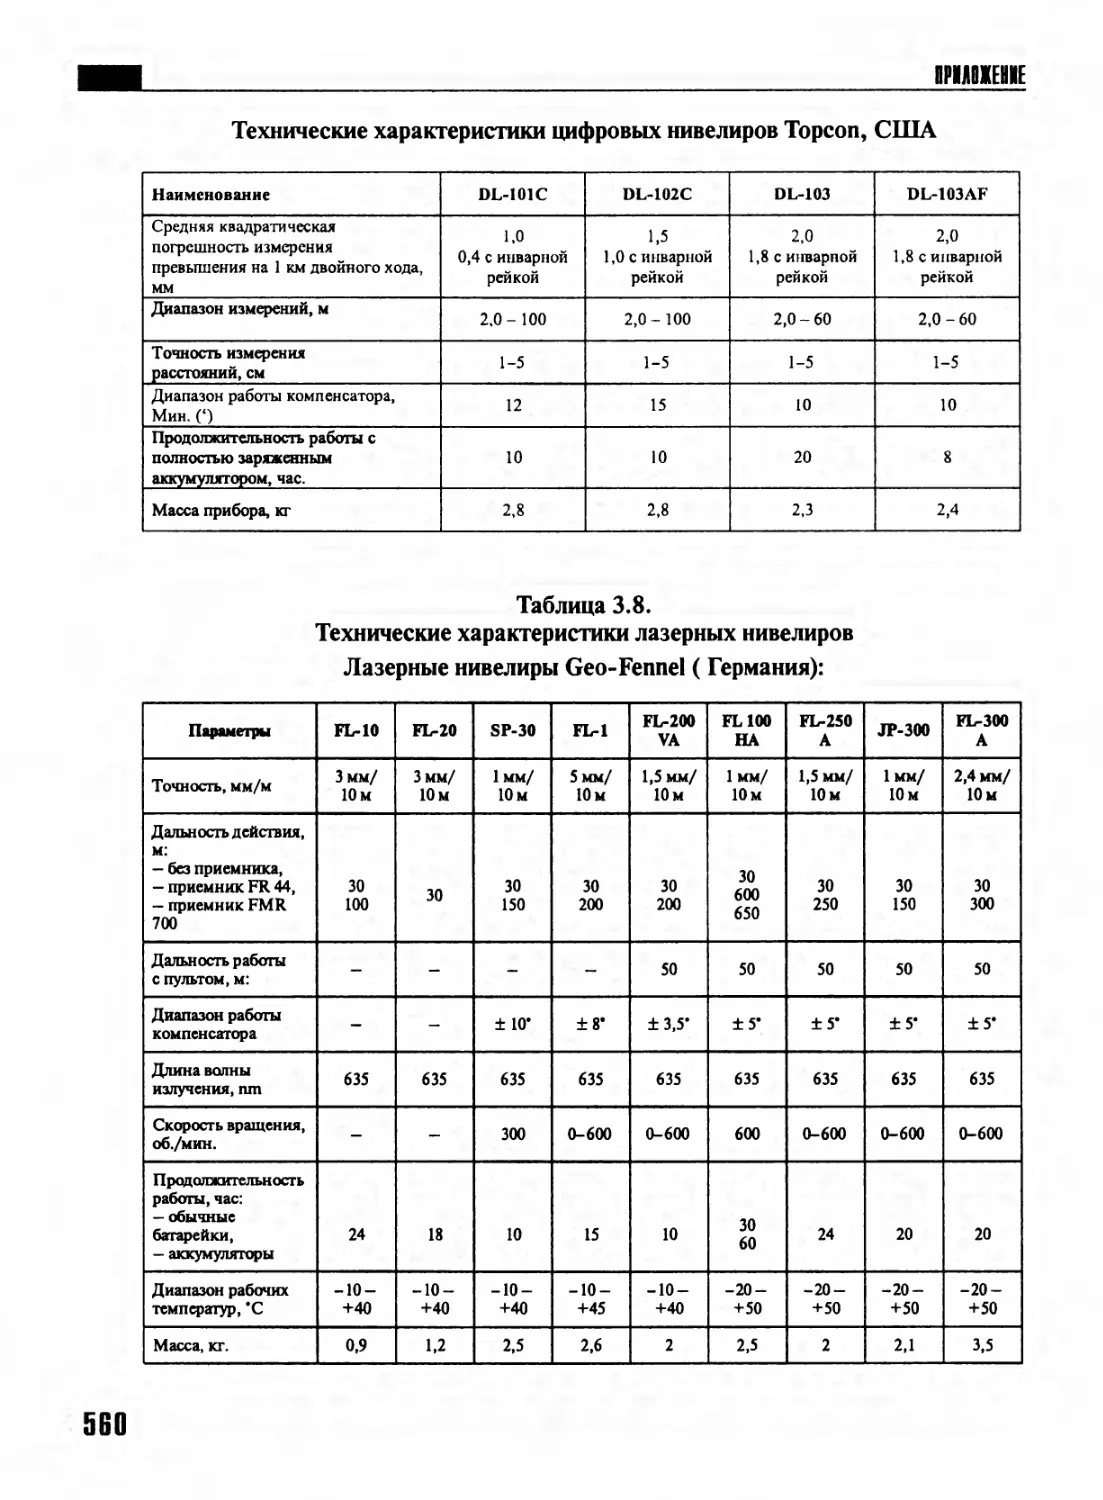 Таблица 3.8. Технические характеристики лазерных нивелиров